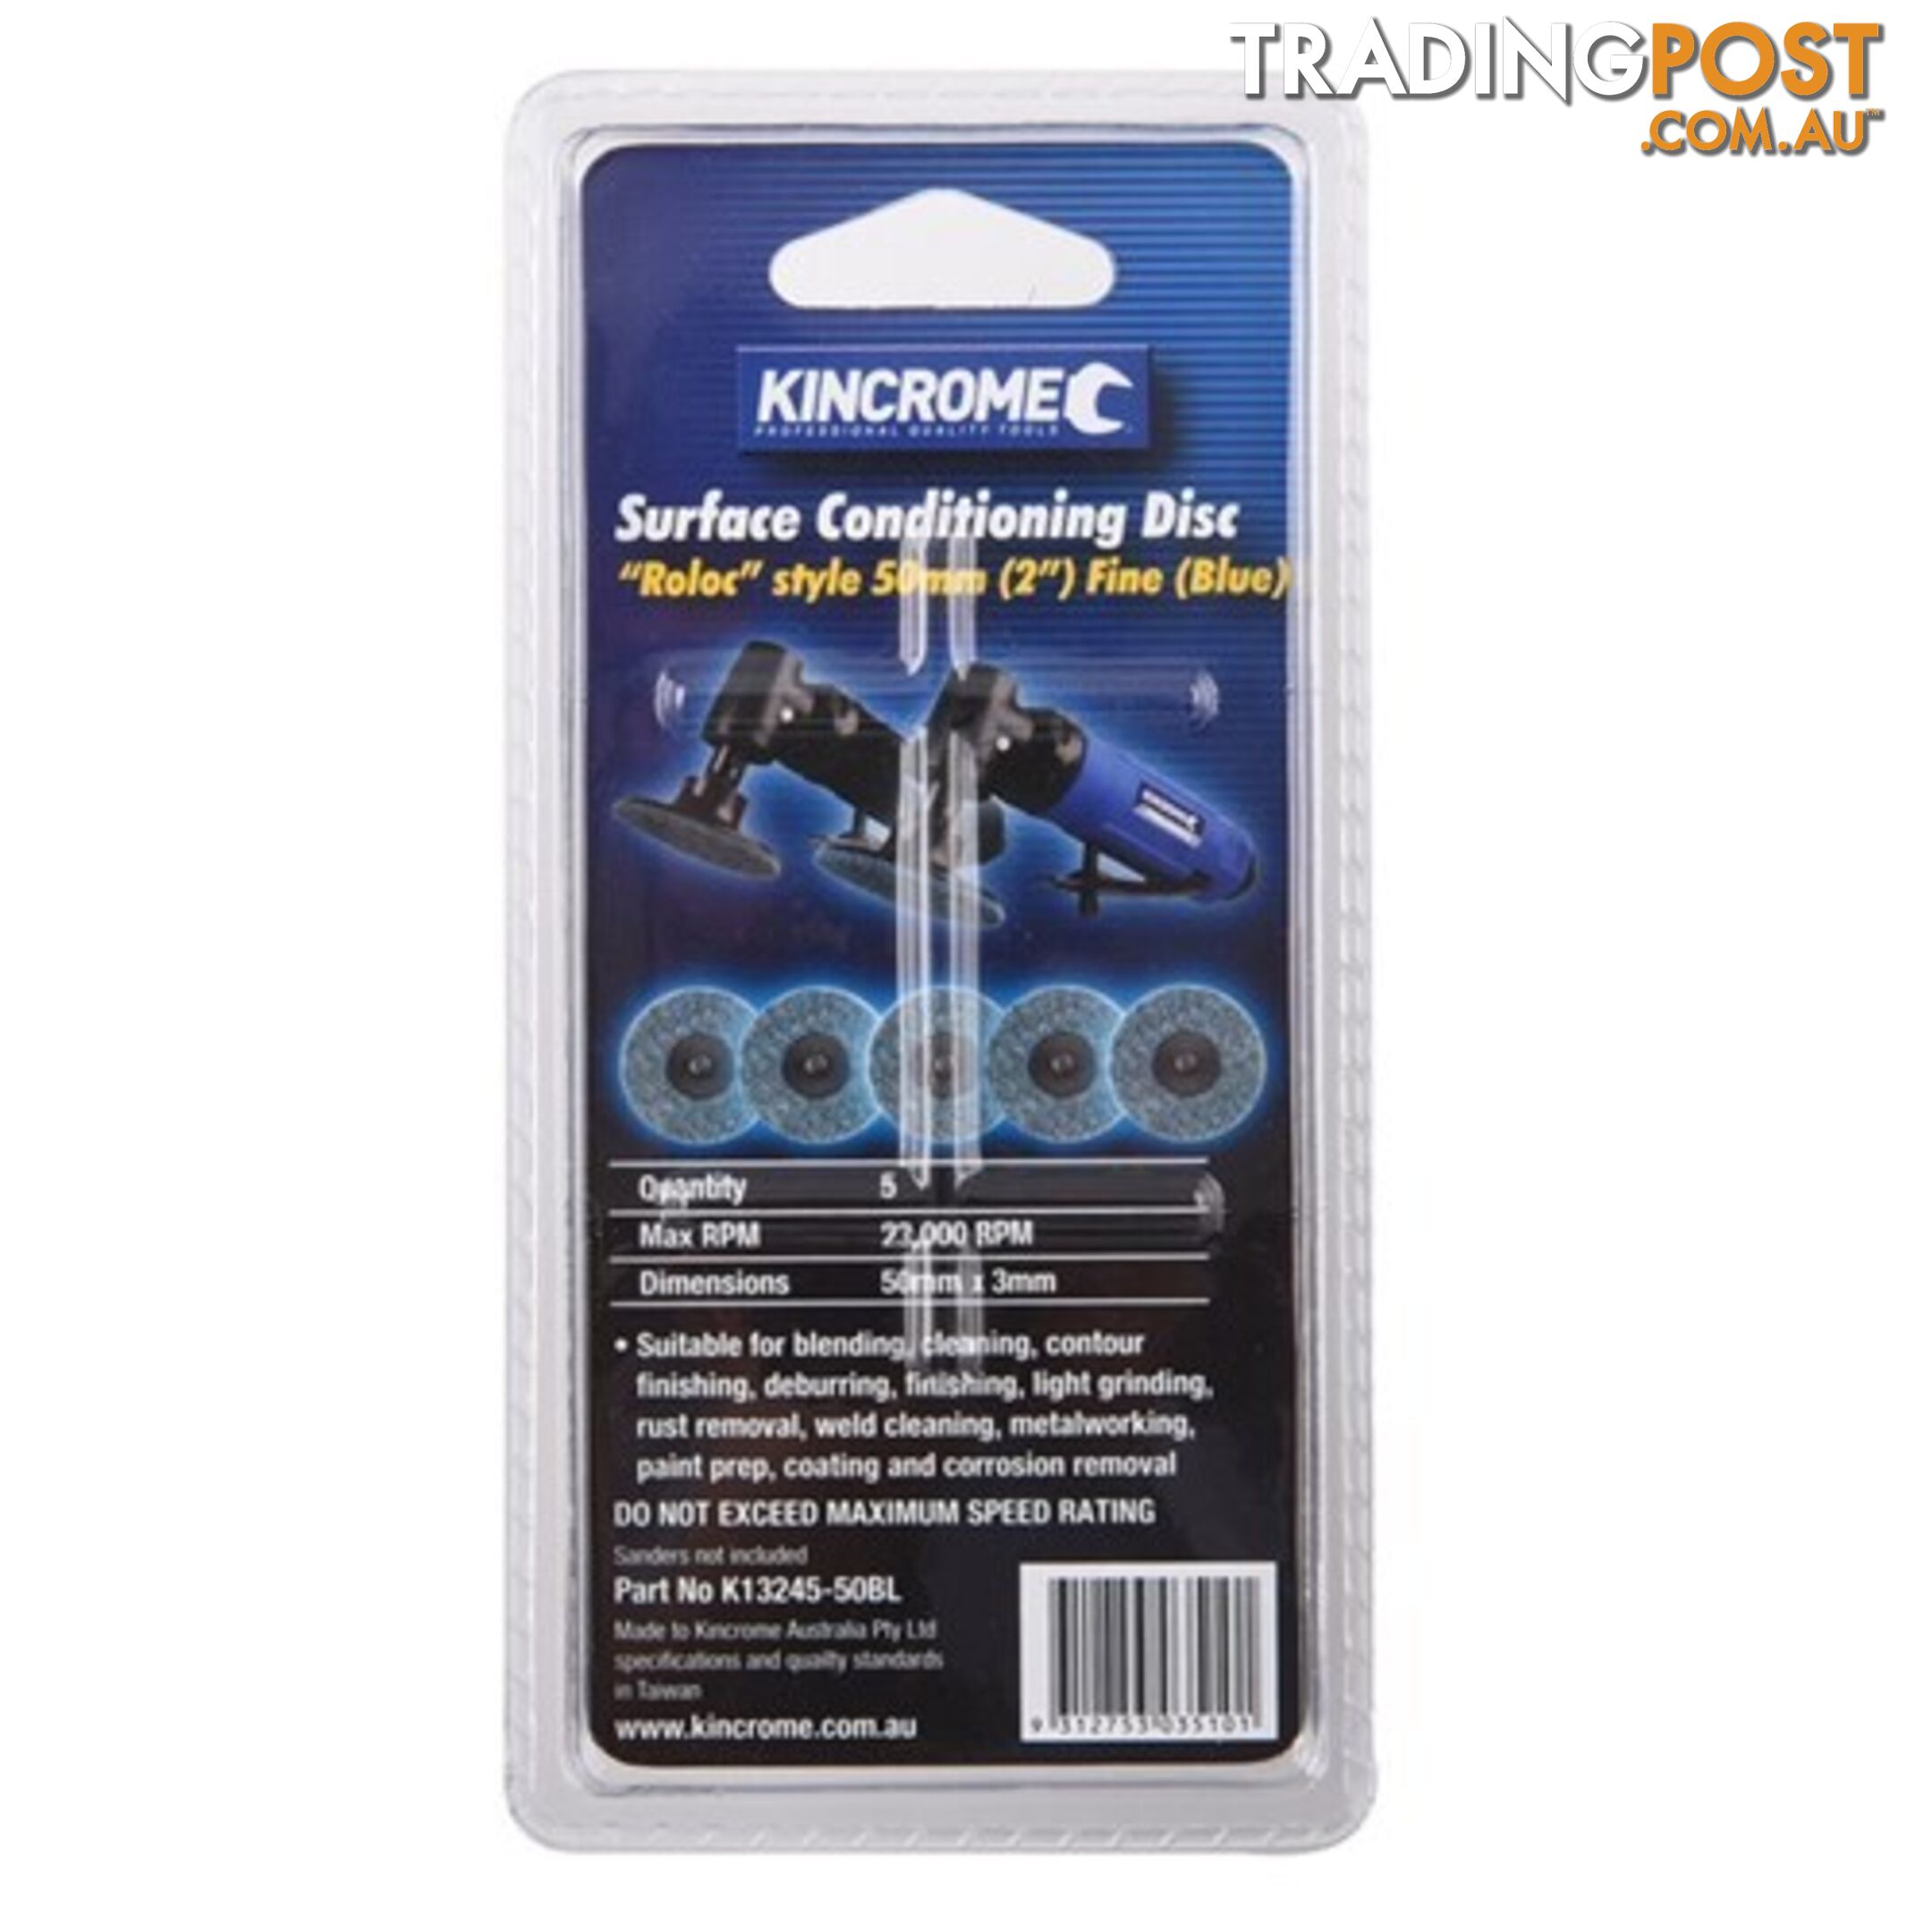 âRolocâ Style Sanding Discs 2â (50mm) 80 Grit (Fine) 5 Pack Kincrome K13245-50BL